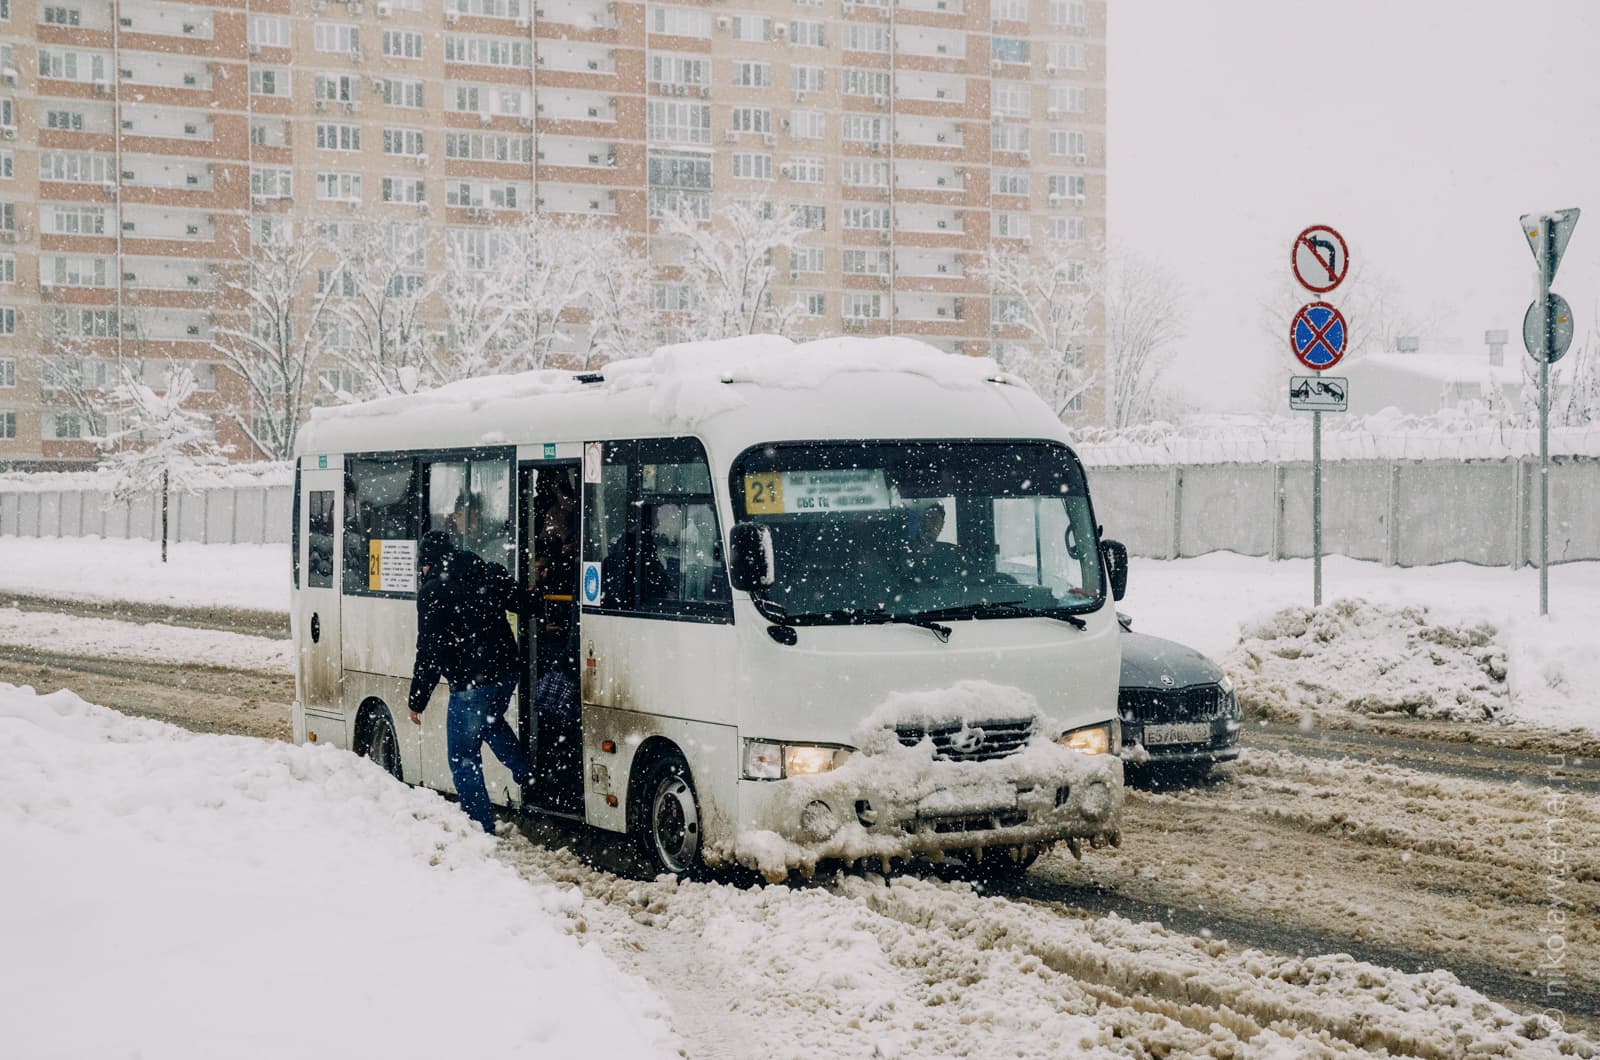 Белый микроавтобус, маршрутное такси, высаживает пассажиров на заснеженной остановке